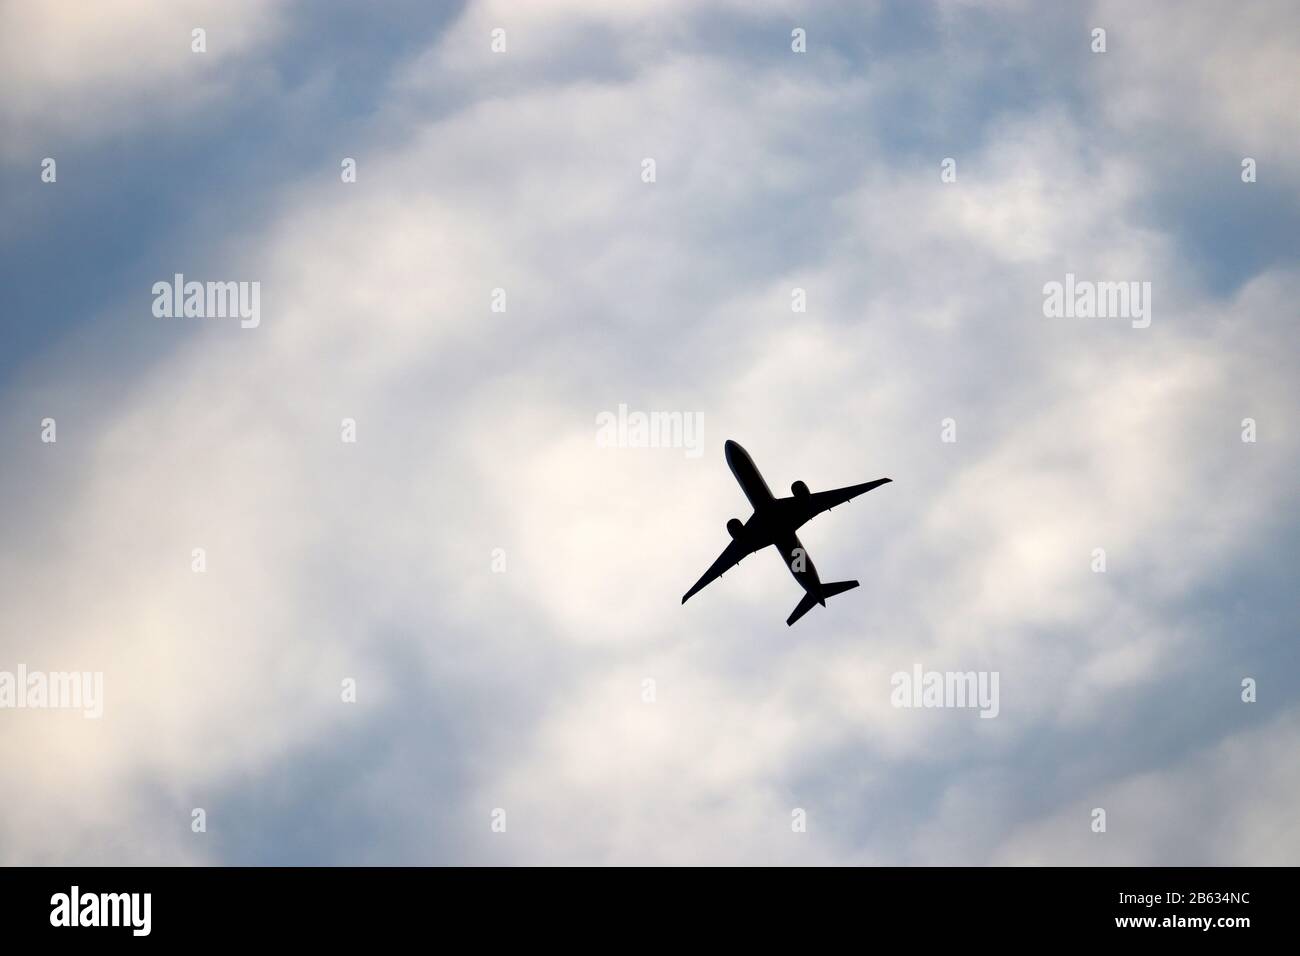 Flugzeug im blauen Himmel auf dem Hintergrund weißer Wolken fliegen. Silhouette eines kommerziellen Flugzeugs während des Climb-, Reise- und Turbulenzkonzepts Stockfoto